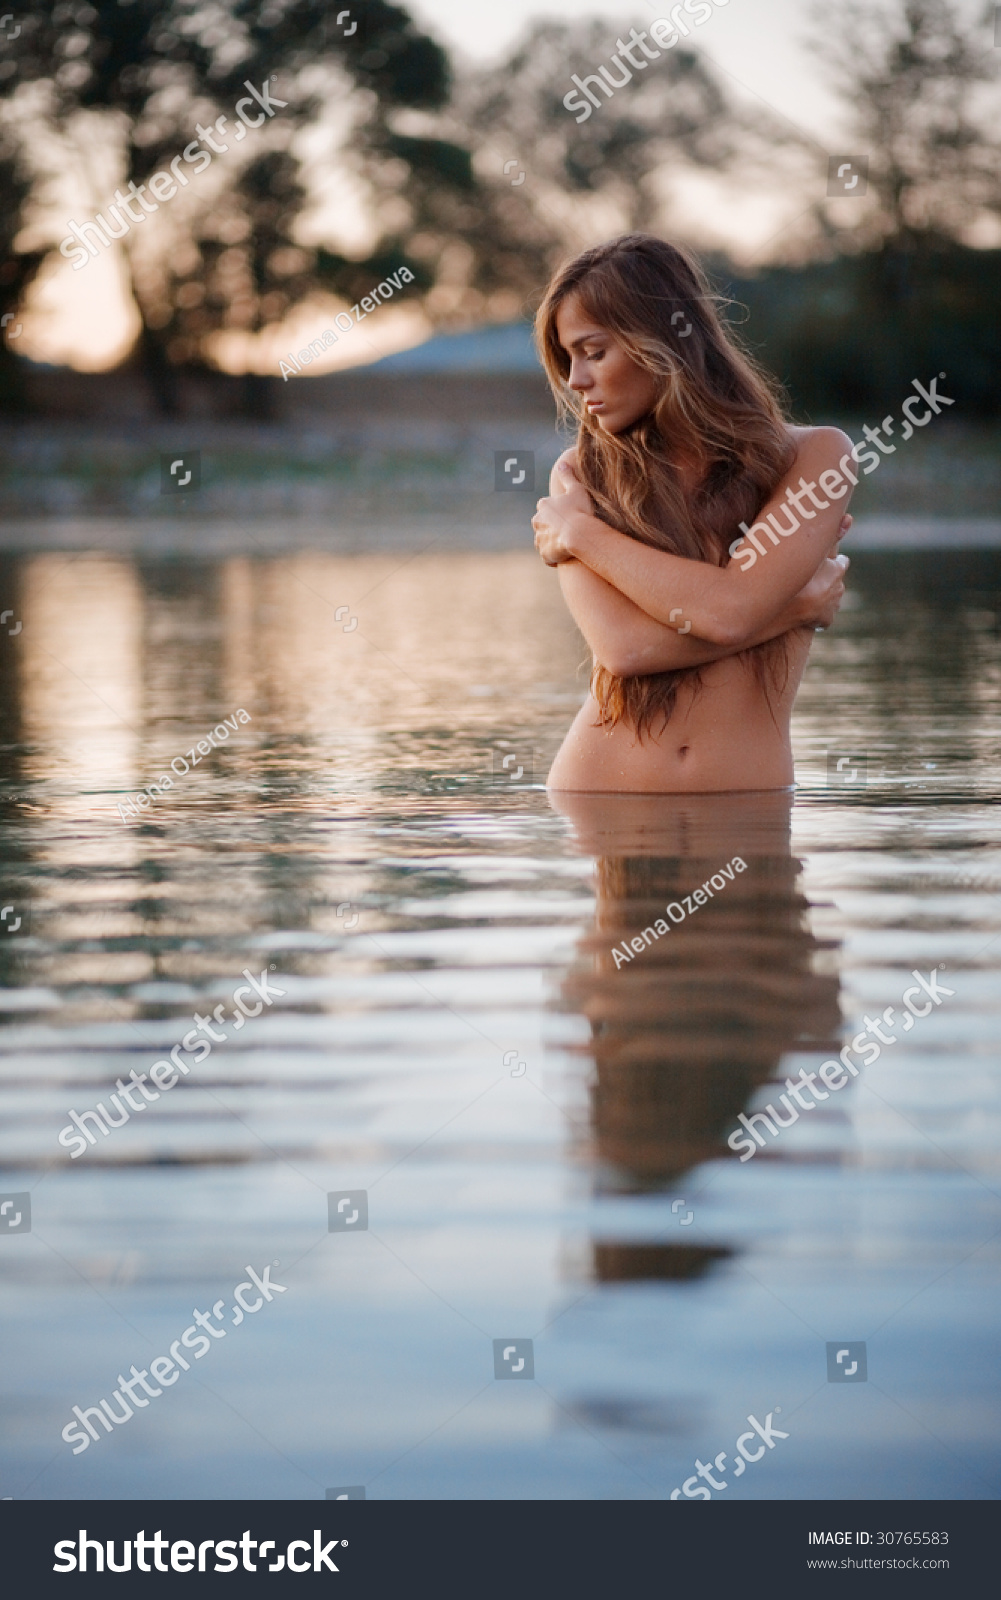 Lake nude